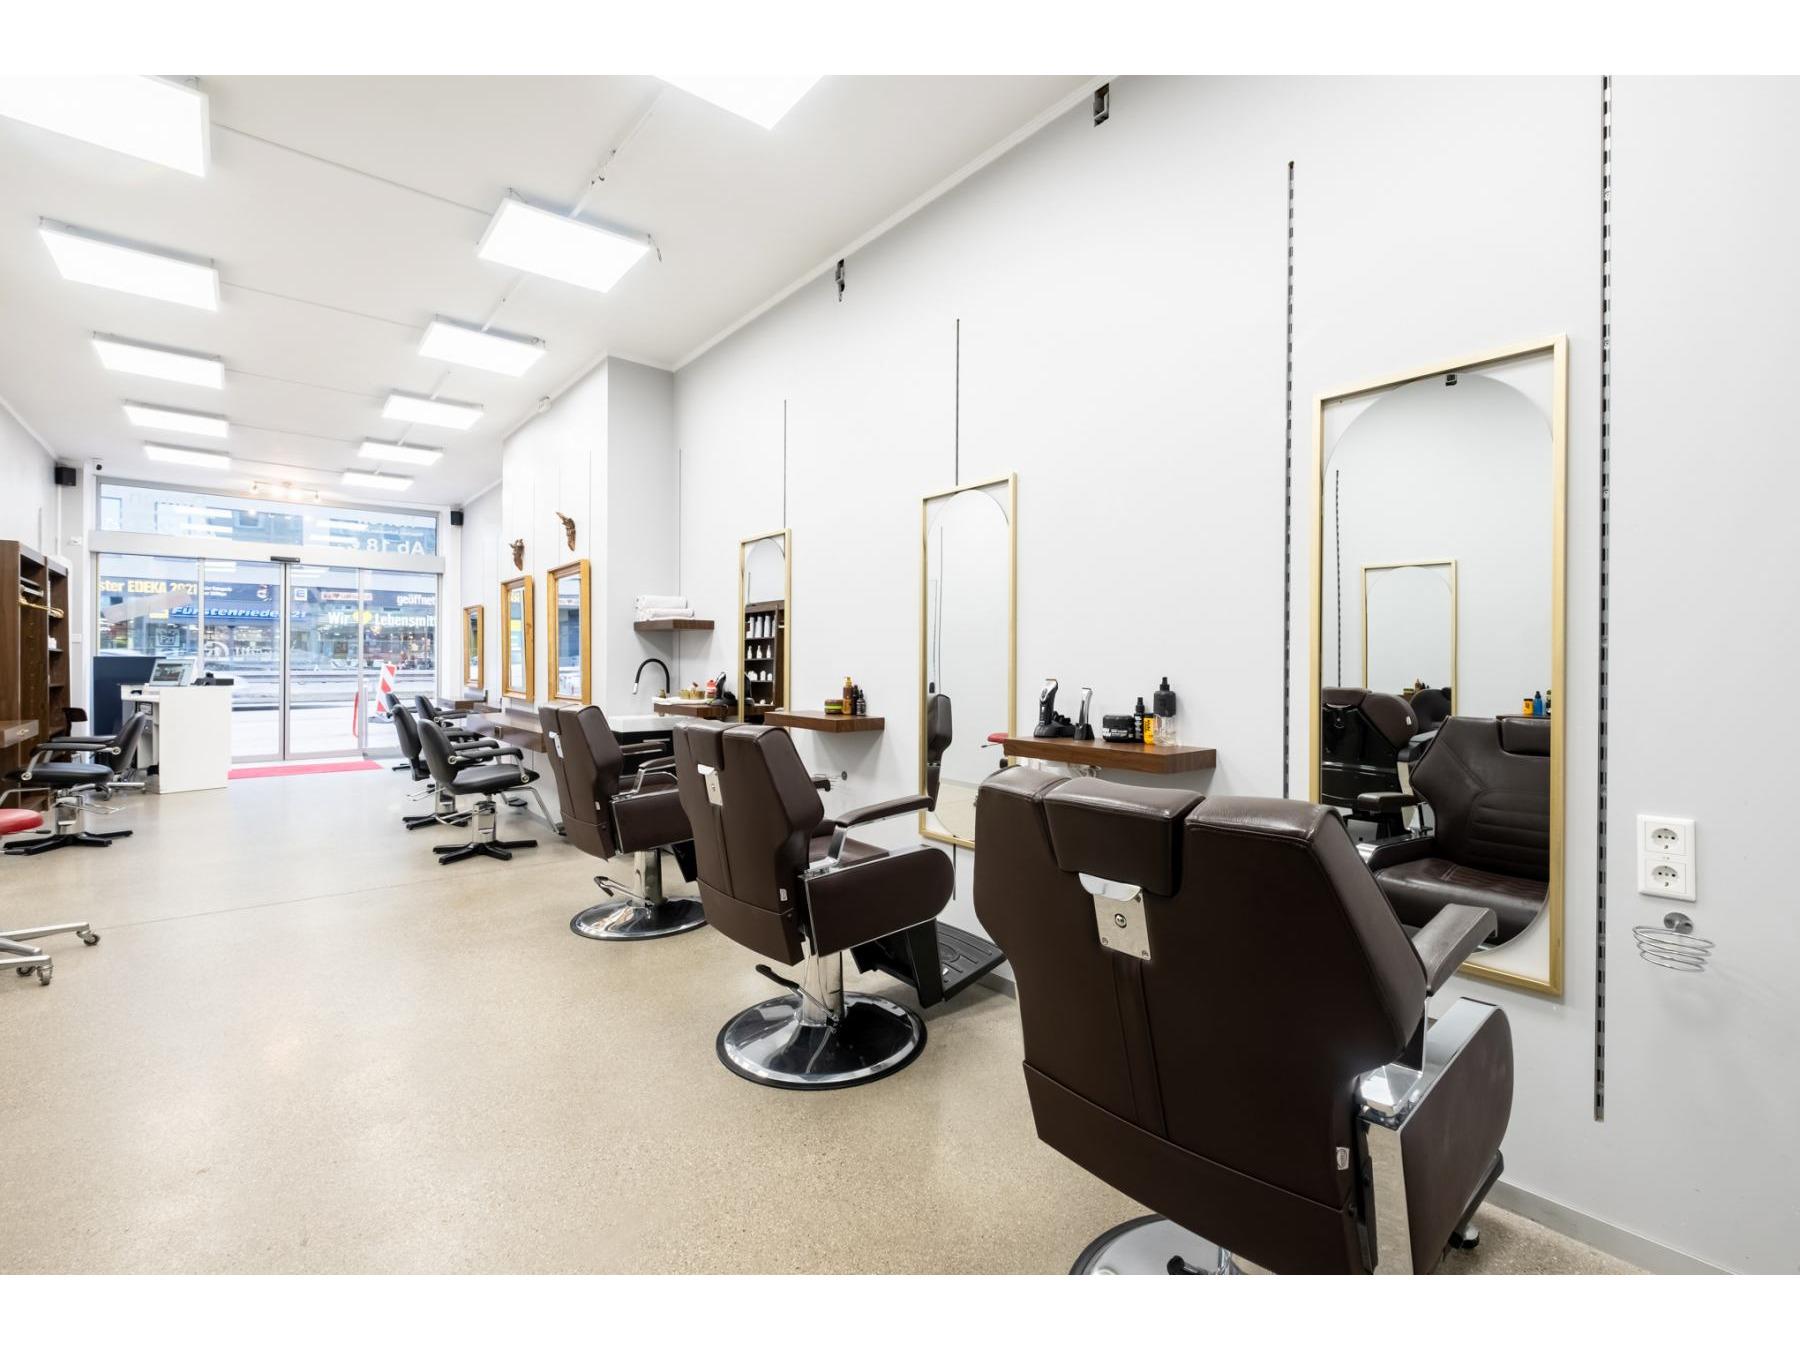 Danars Salon - Ihr Friseur München , Balayage & Colorations Experte , Top Hairstylist, Fürstenrieder Str 20 in München